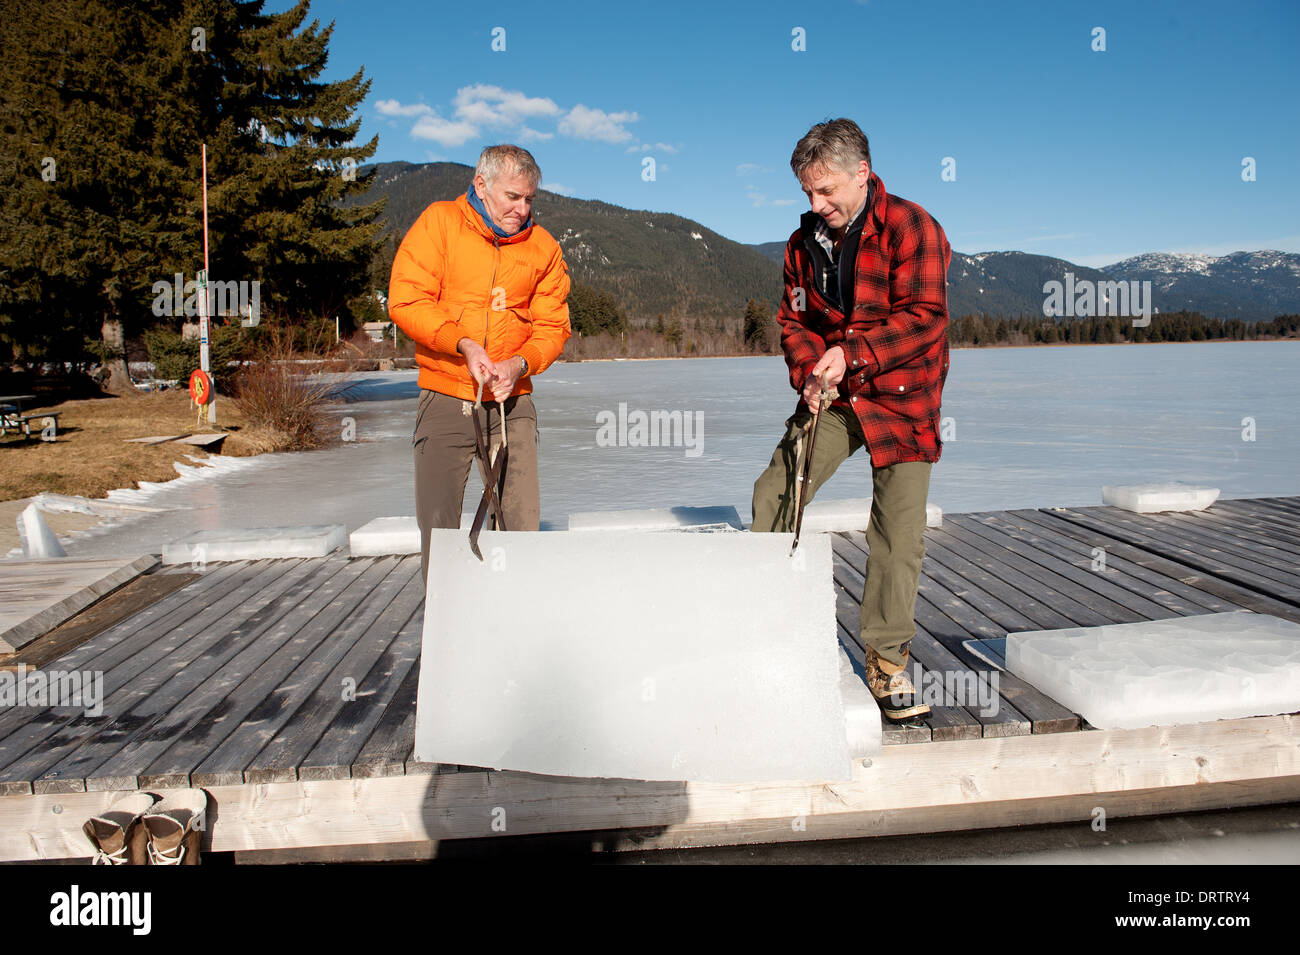 Los hombres cosechar bloques de hielo de un lago congelado con una motosierra para la cosecha de manzanas para un concurso de tallado de hielo. Whistler BC, Canadá Foto de stock